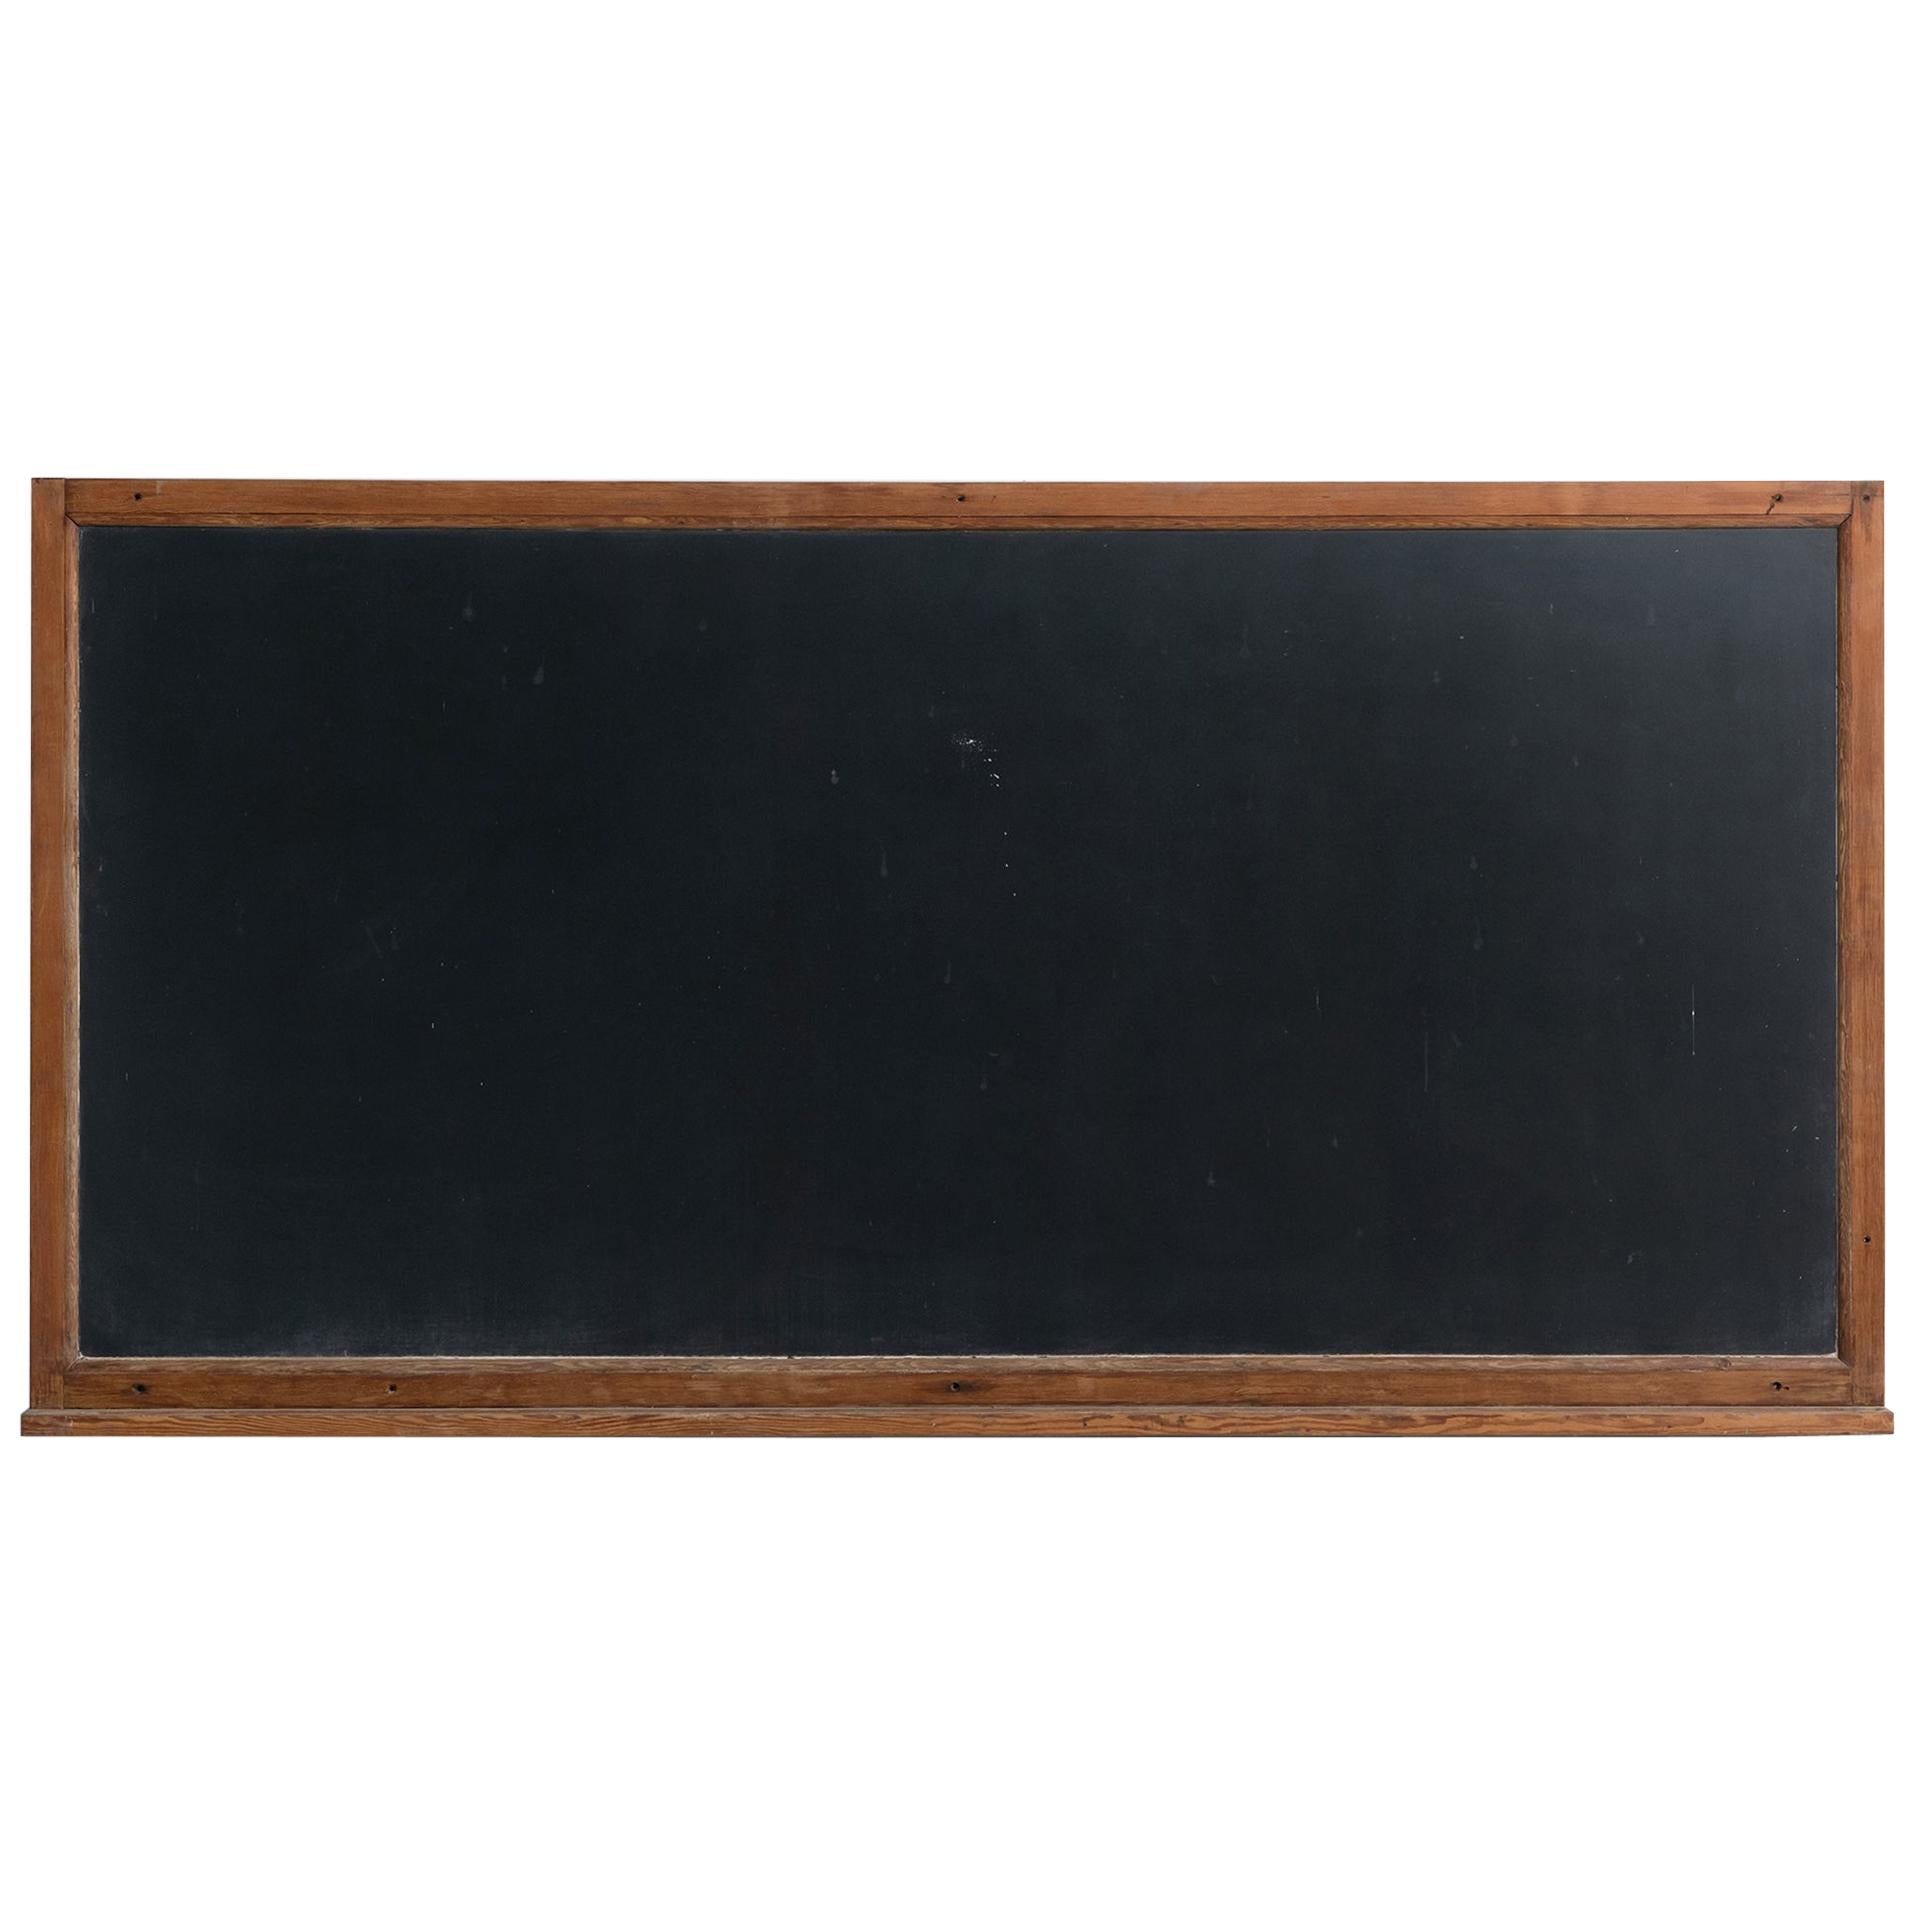 Slate Blackboard